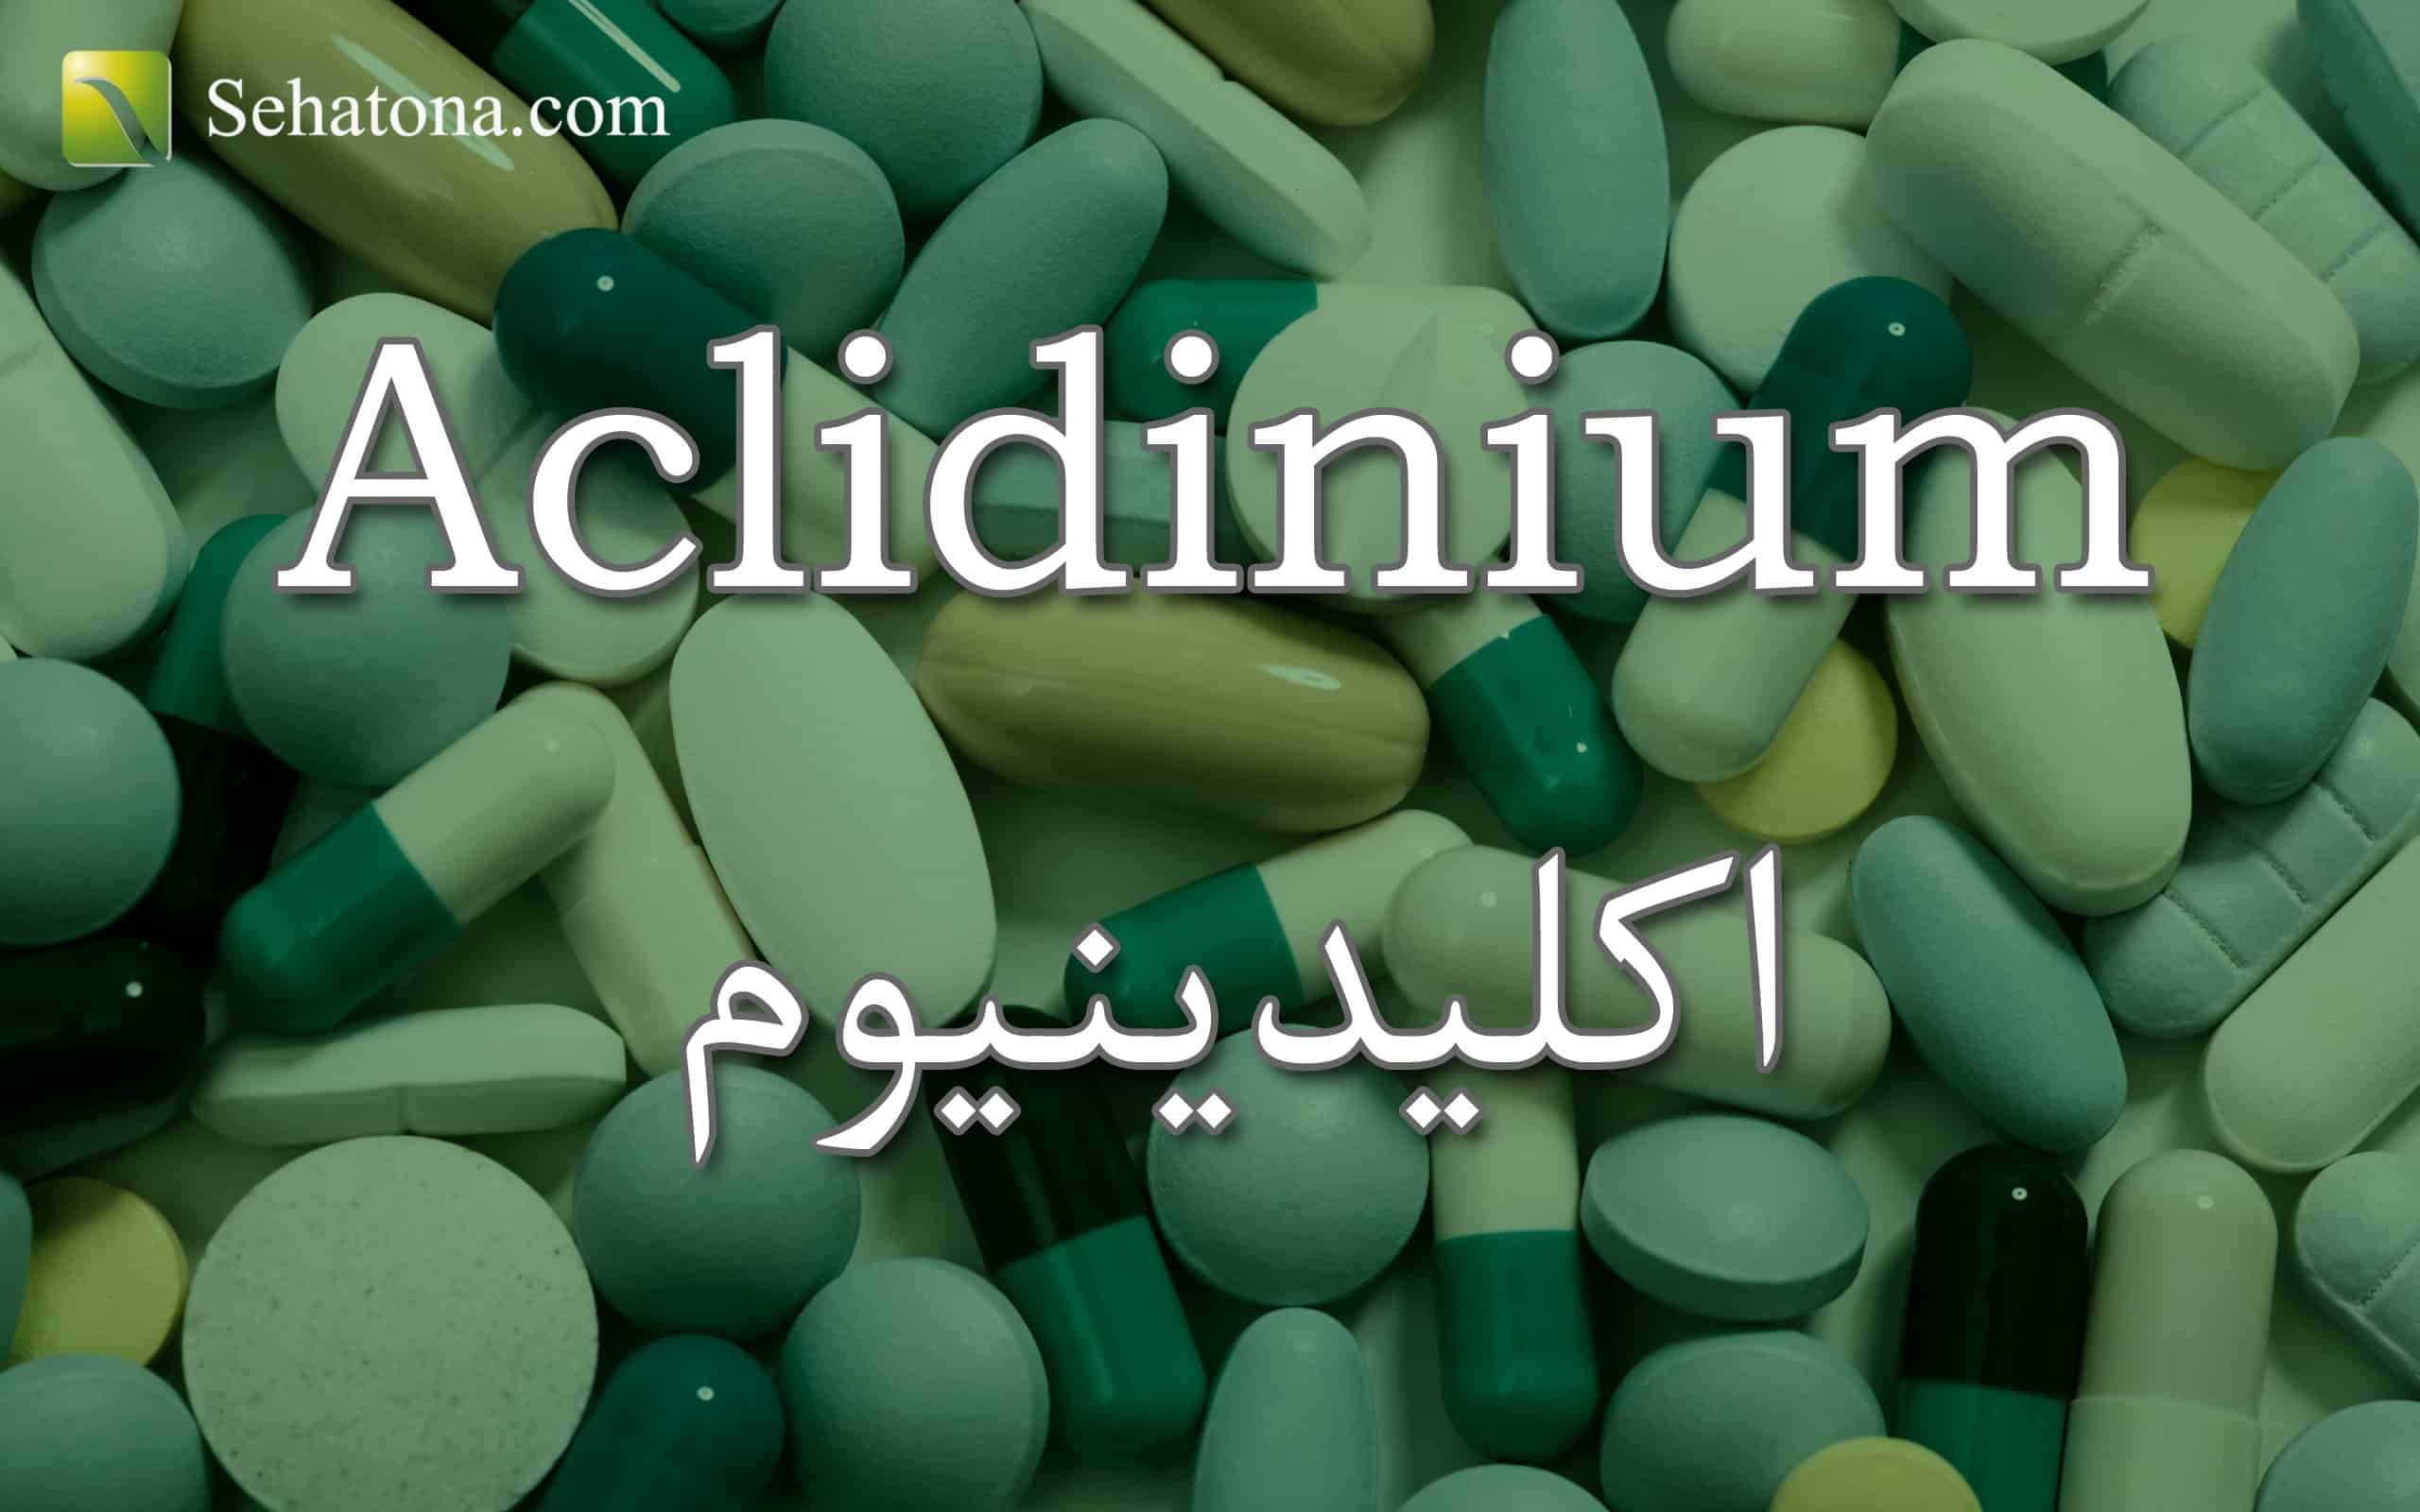 Aclidinium